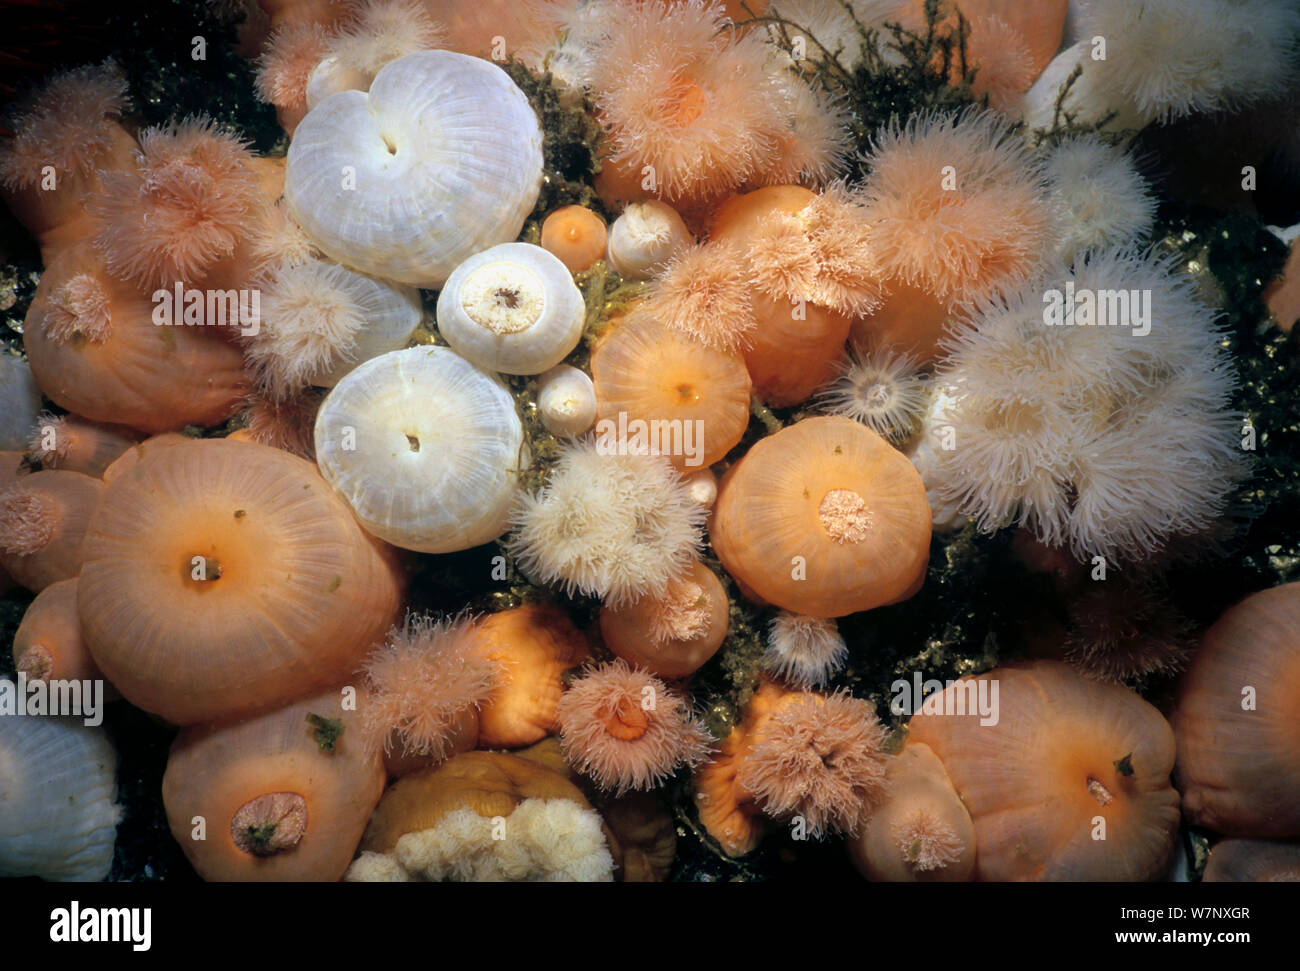 Close-up of Metridium Anemones (Metridium farcimen). Queen Charlotte Strait, British Columbia, Canada, North Pacific Ocean Stock Photo